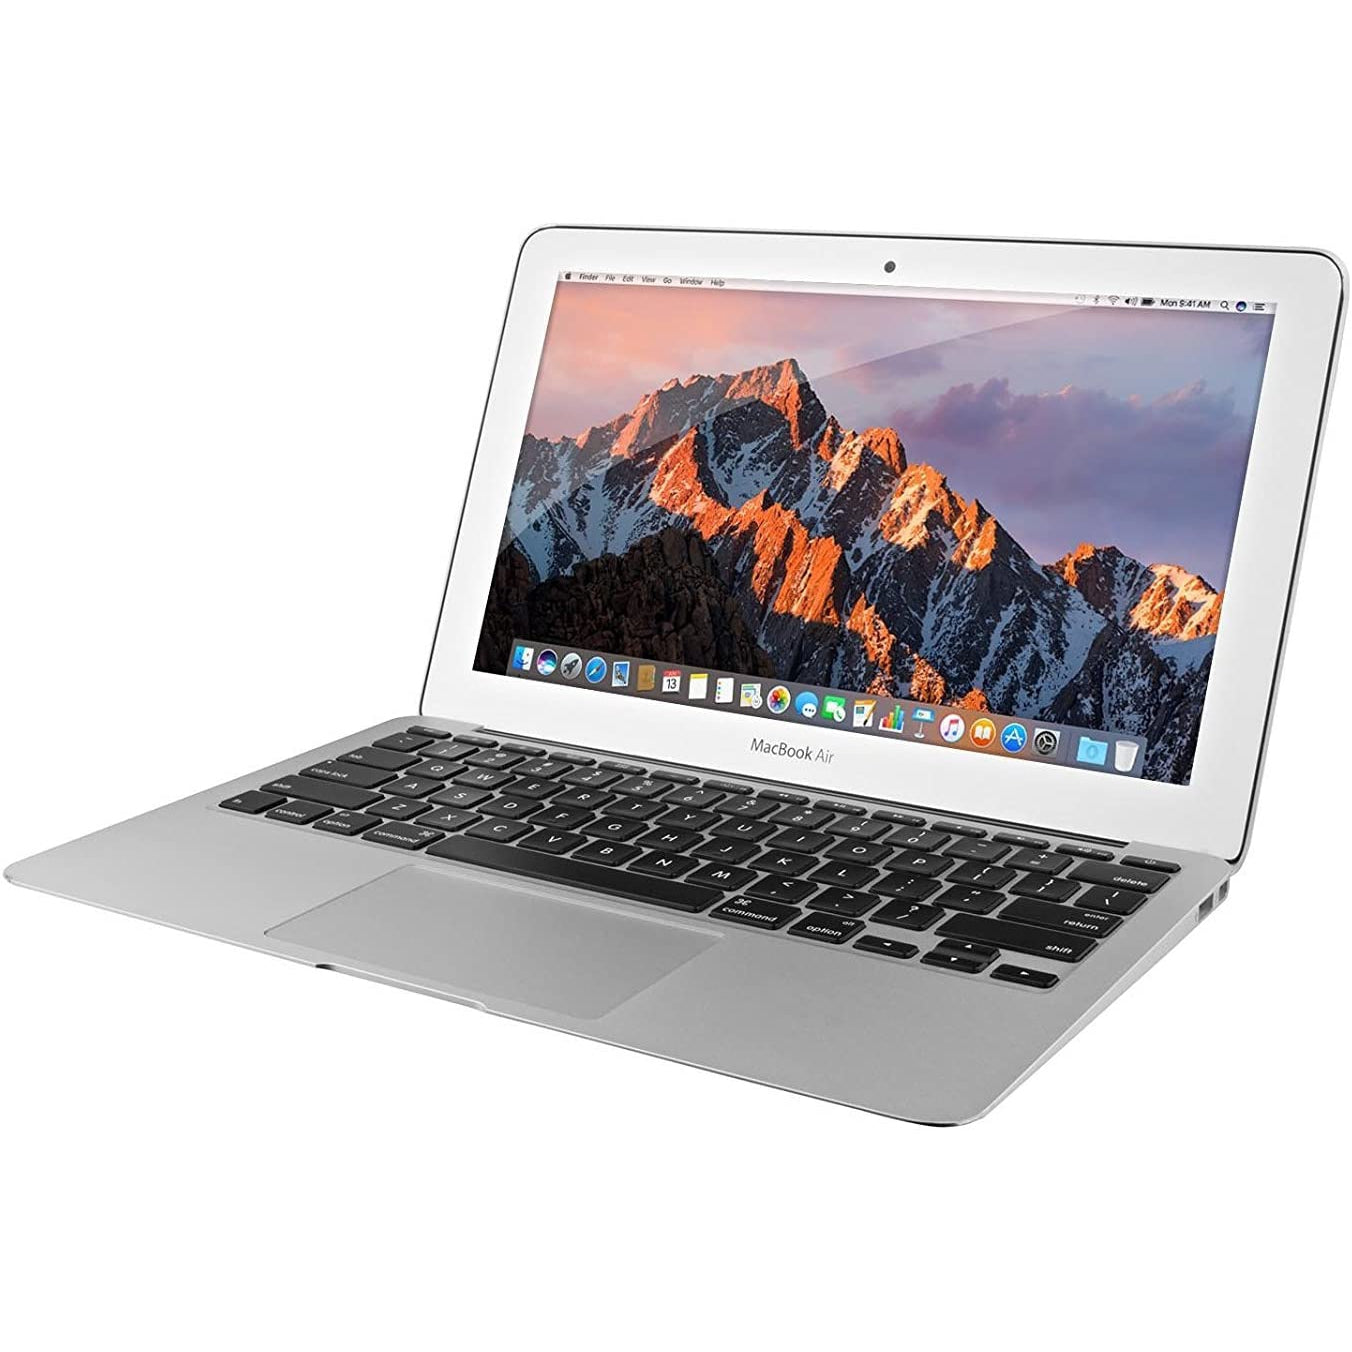 Apple MacBook Air 11.6'' MJVM2LL/A (2015) Intel Core i5 4GB RAM 128GB SSD - Good